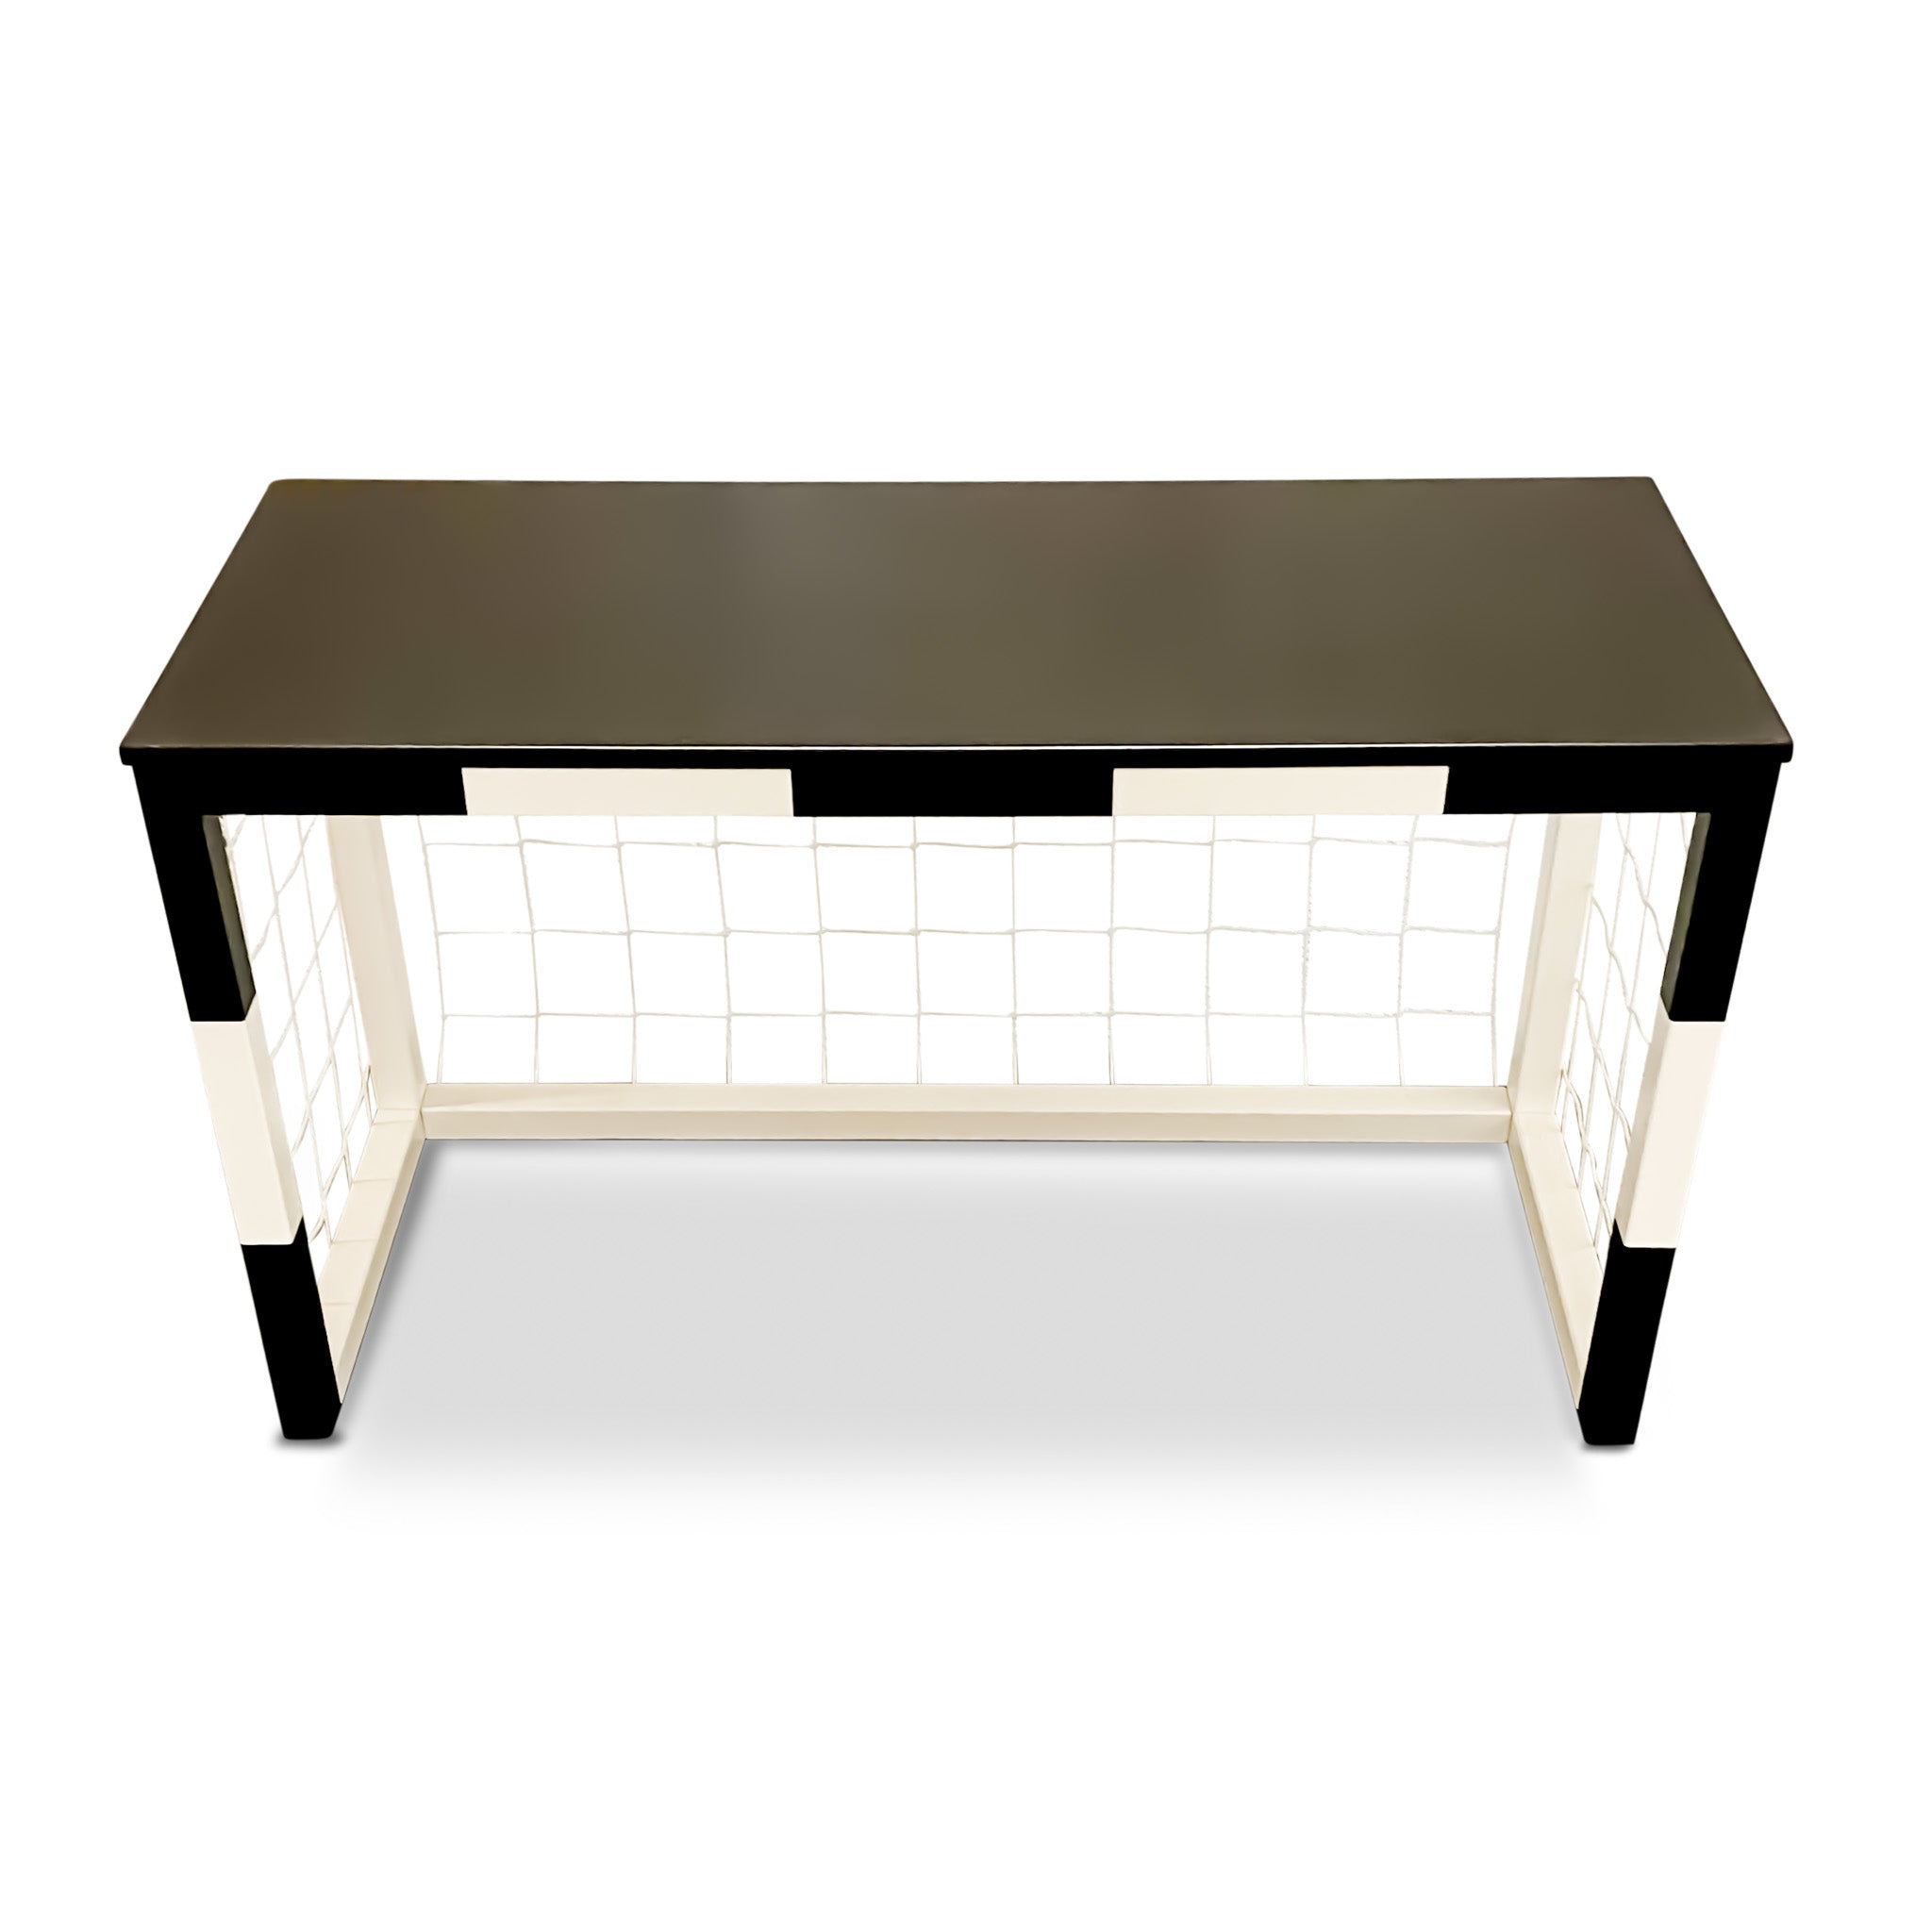 Wooden desk | Football goal desk with net - white/black